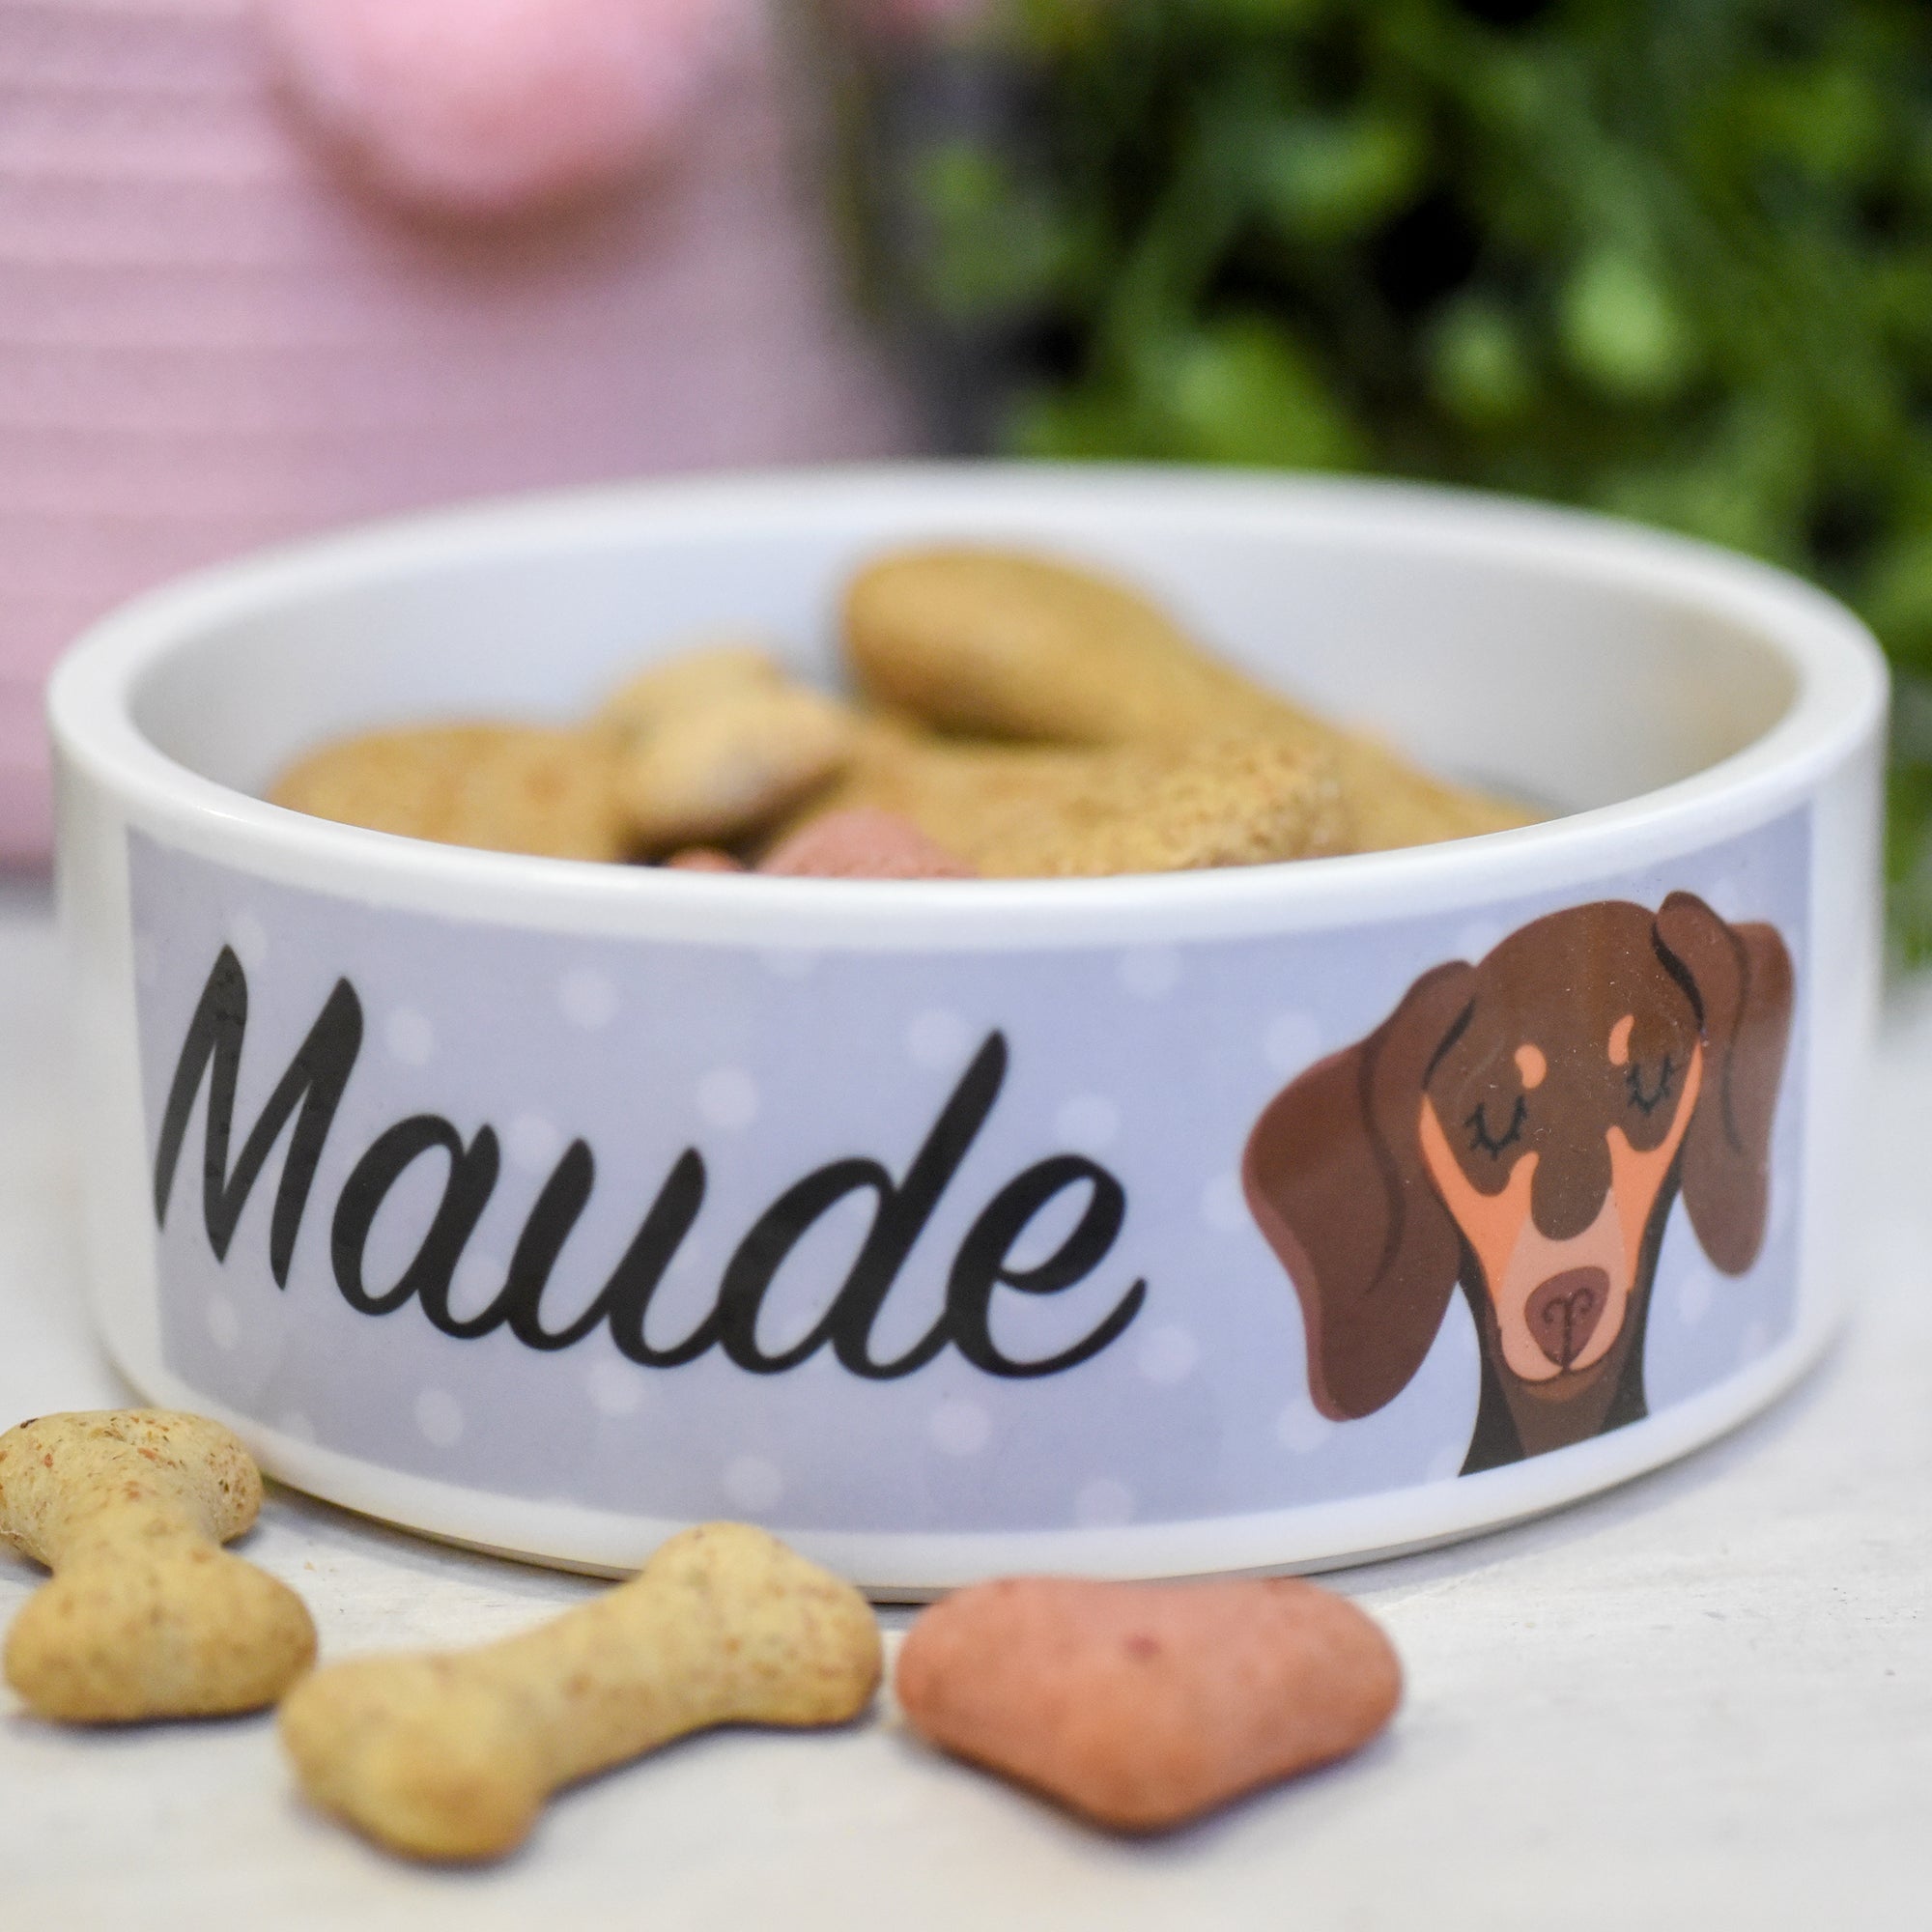 Dachshund Dog Personalised Ceramic Dog Bowl